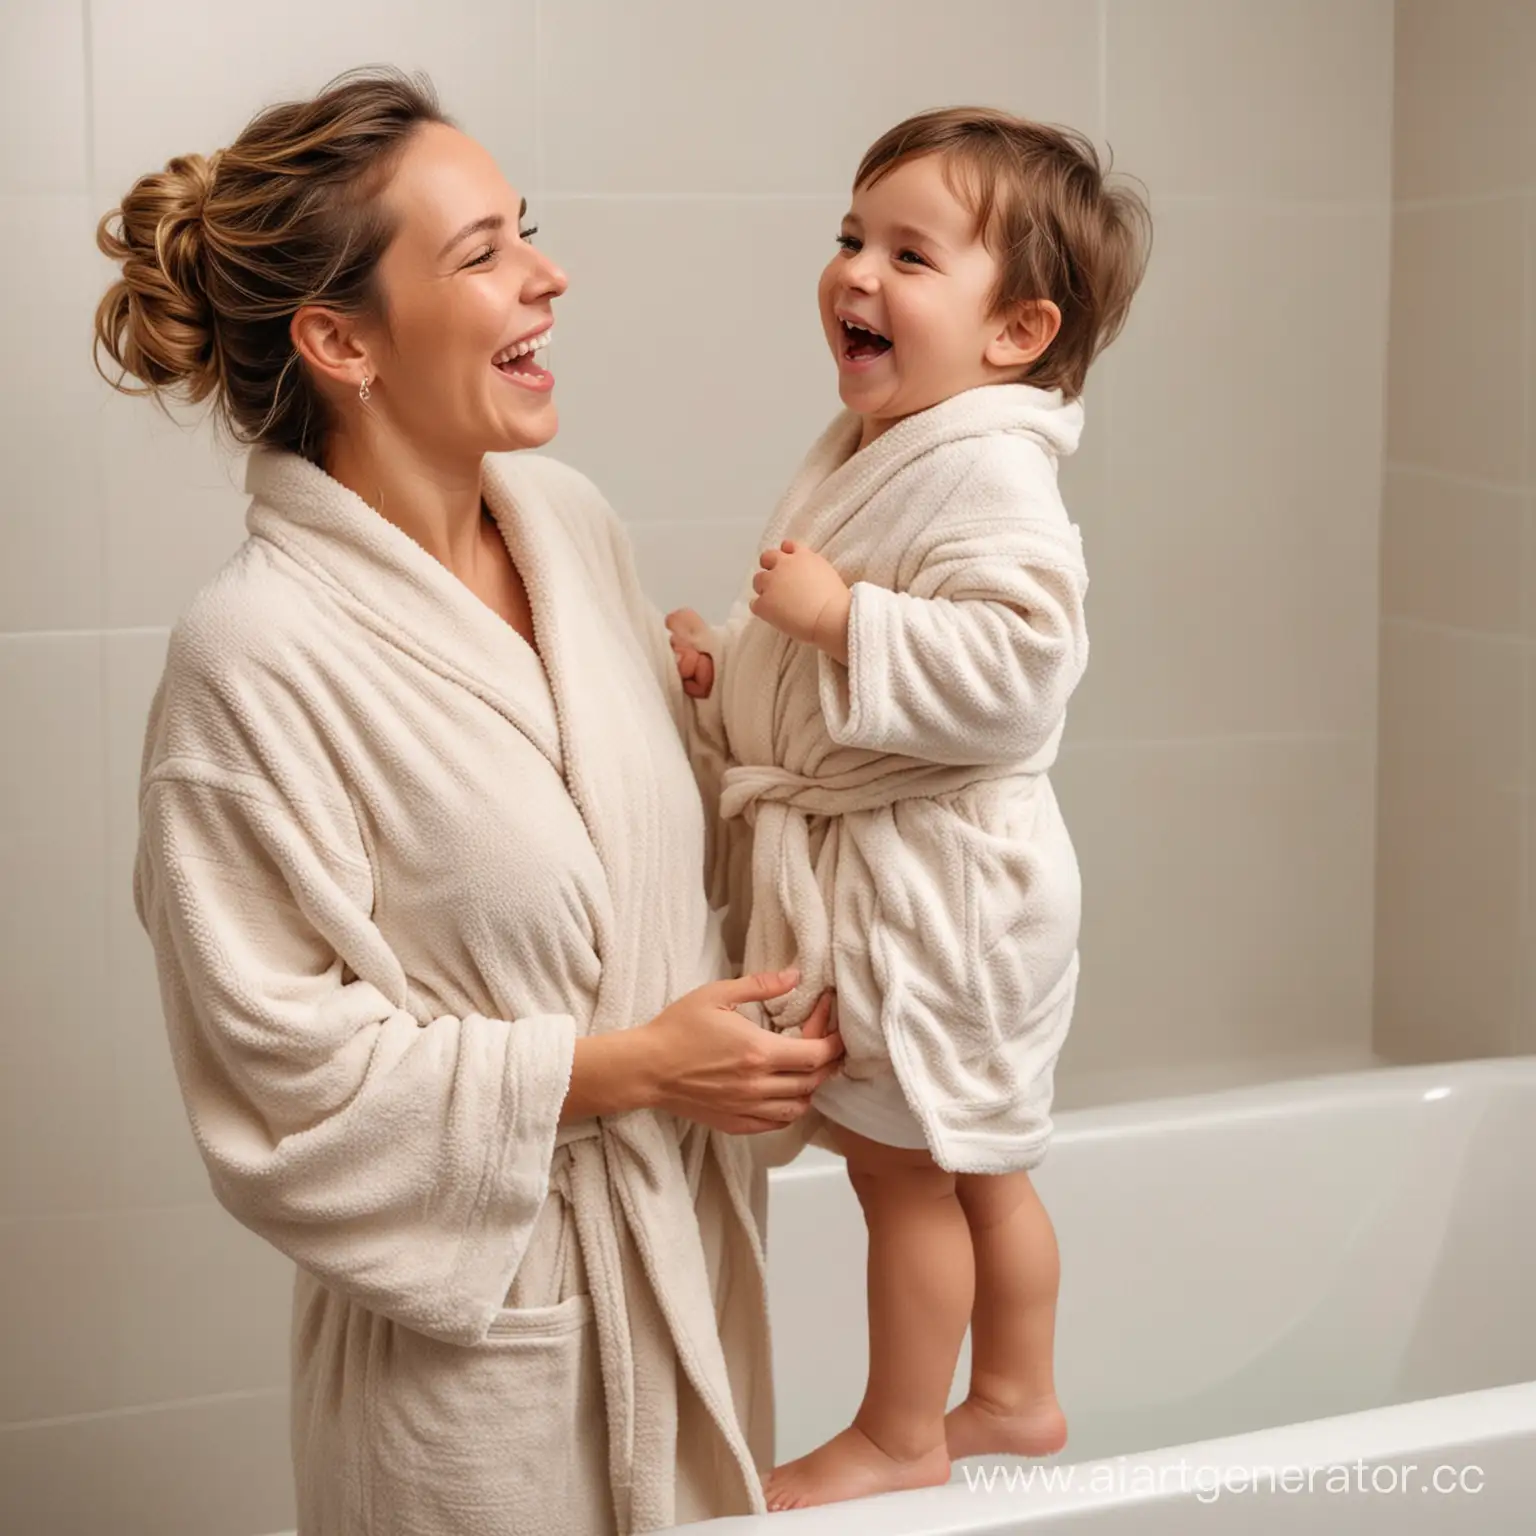 Молодая женщина в халате держит на руках радостного мальчика двух лет в халате в ванной